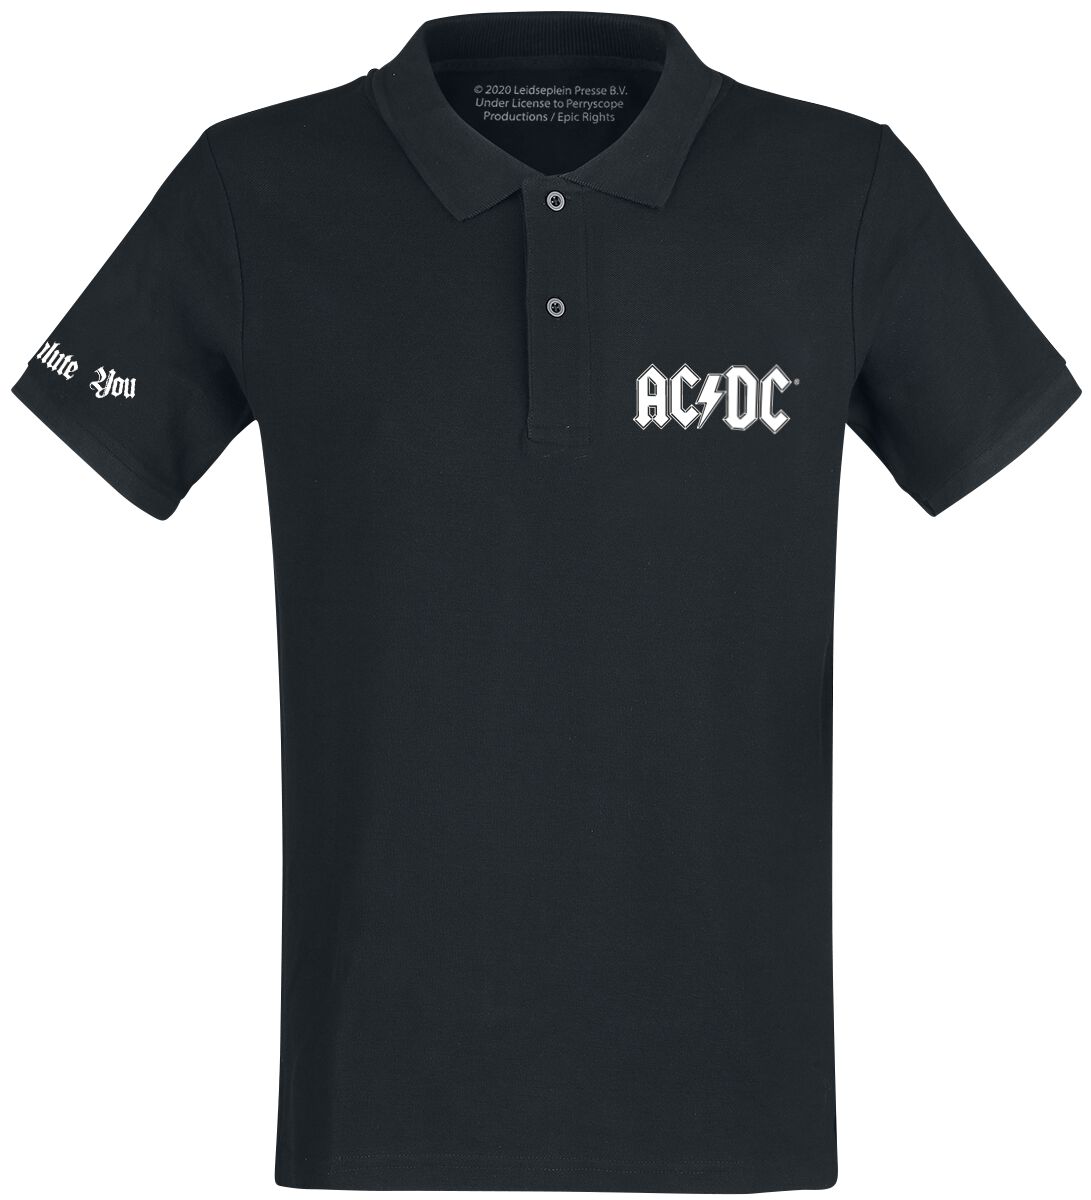 AC/DC Poloshirt - We Salute You - M bis XXL - für Männer - Größe M - schwarz  - Lizenziertes Merchandise!